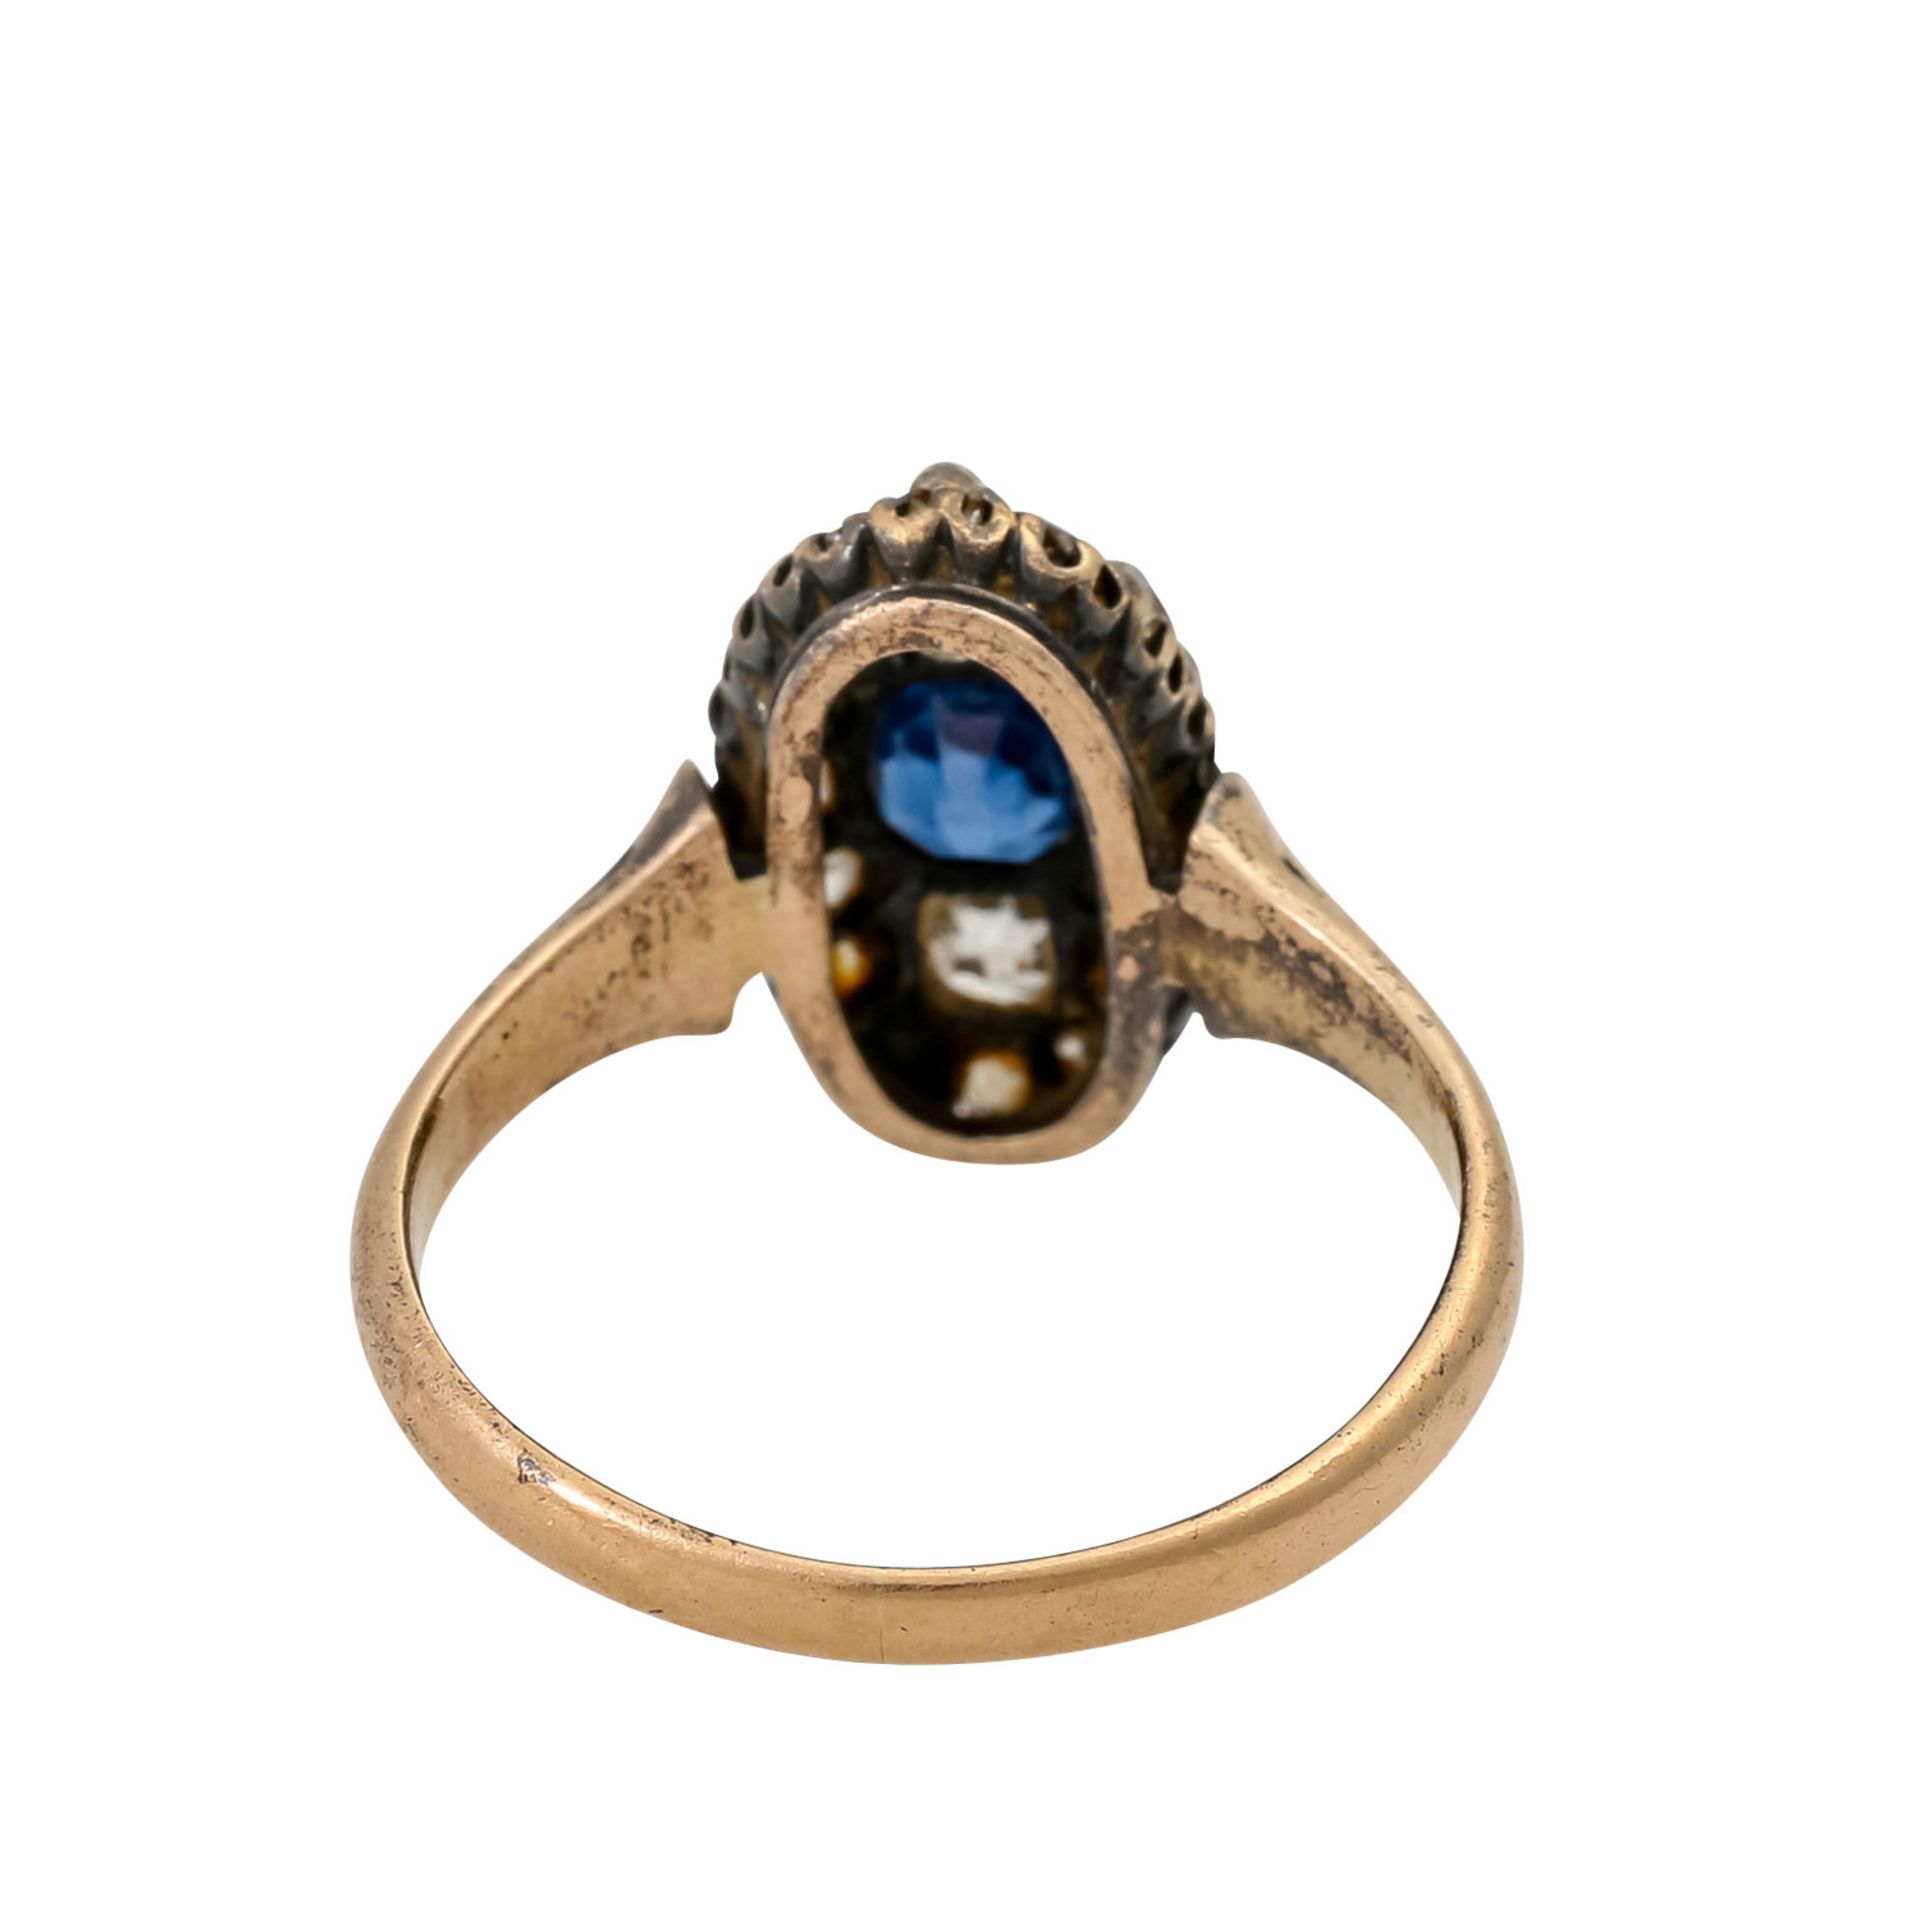 Antiker Ring mit ovalem Saphir und Altschliffdiamanten, zus. ca. 0,6 ct, - Bild 4 aus 4